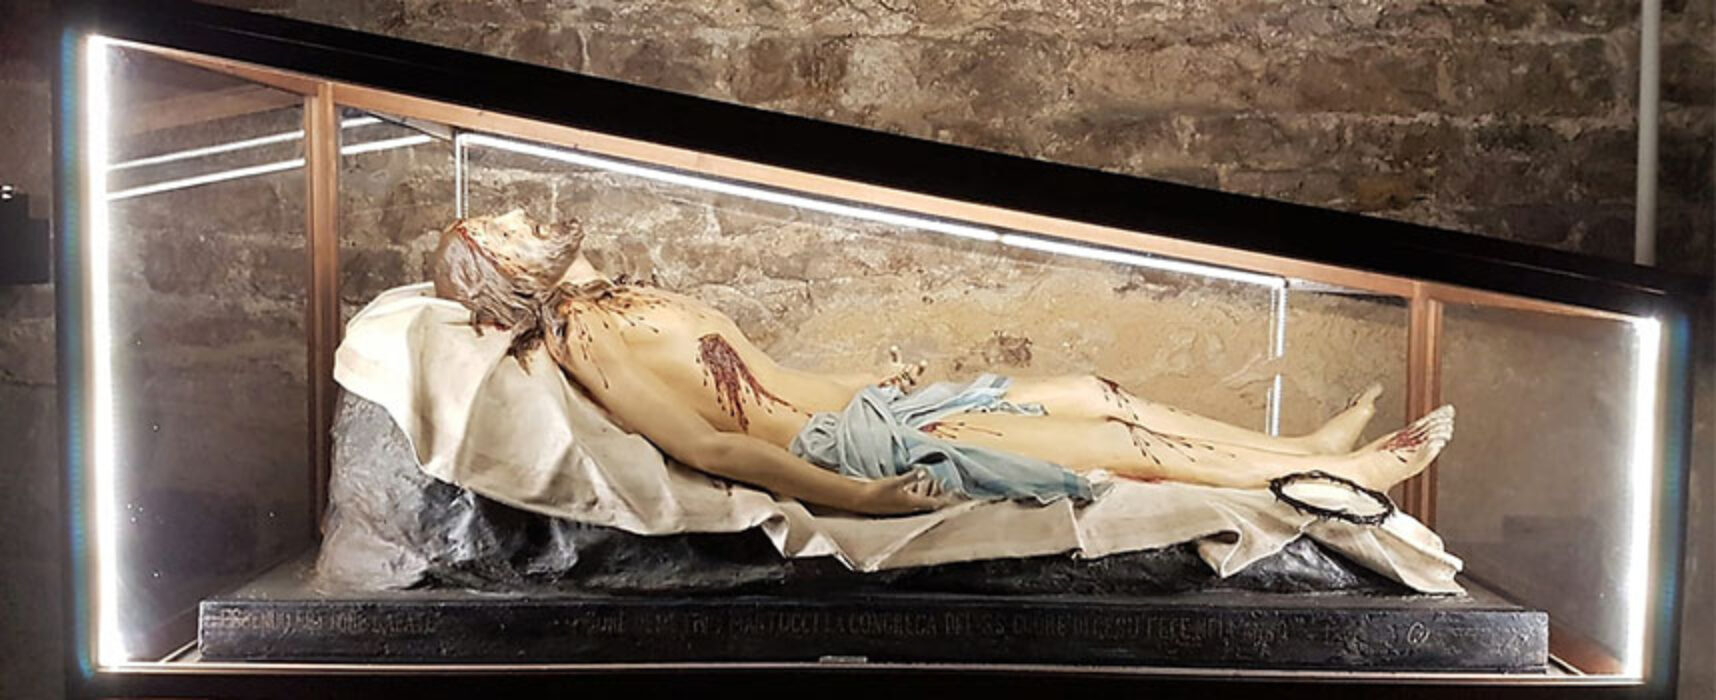 Il simulacro del Cristo Morto visita la Parrocchia Stella Maris di Bisceglie